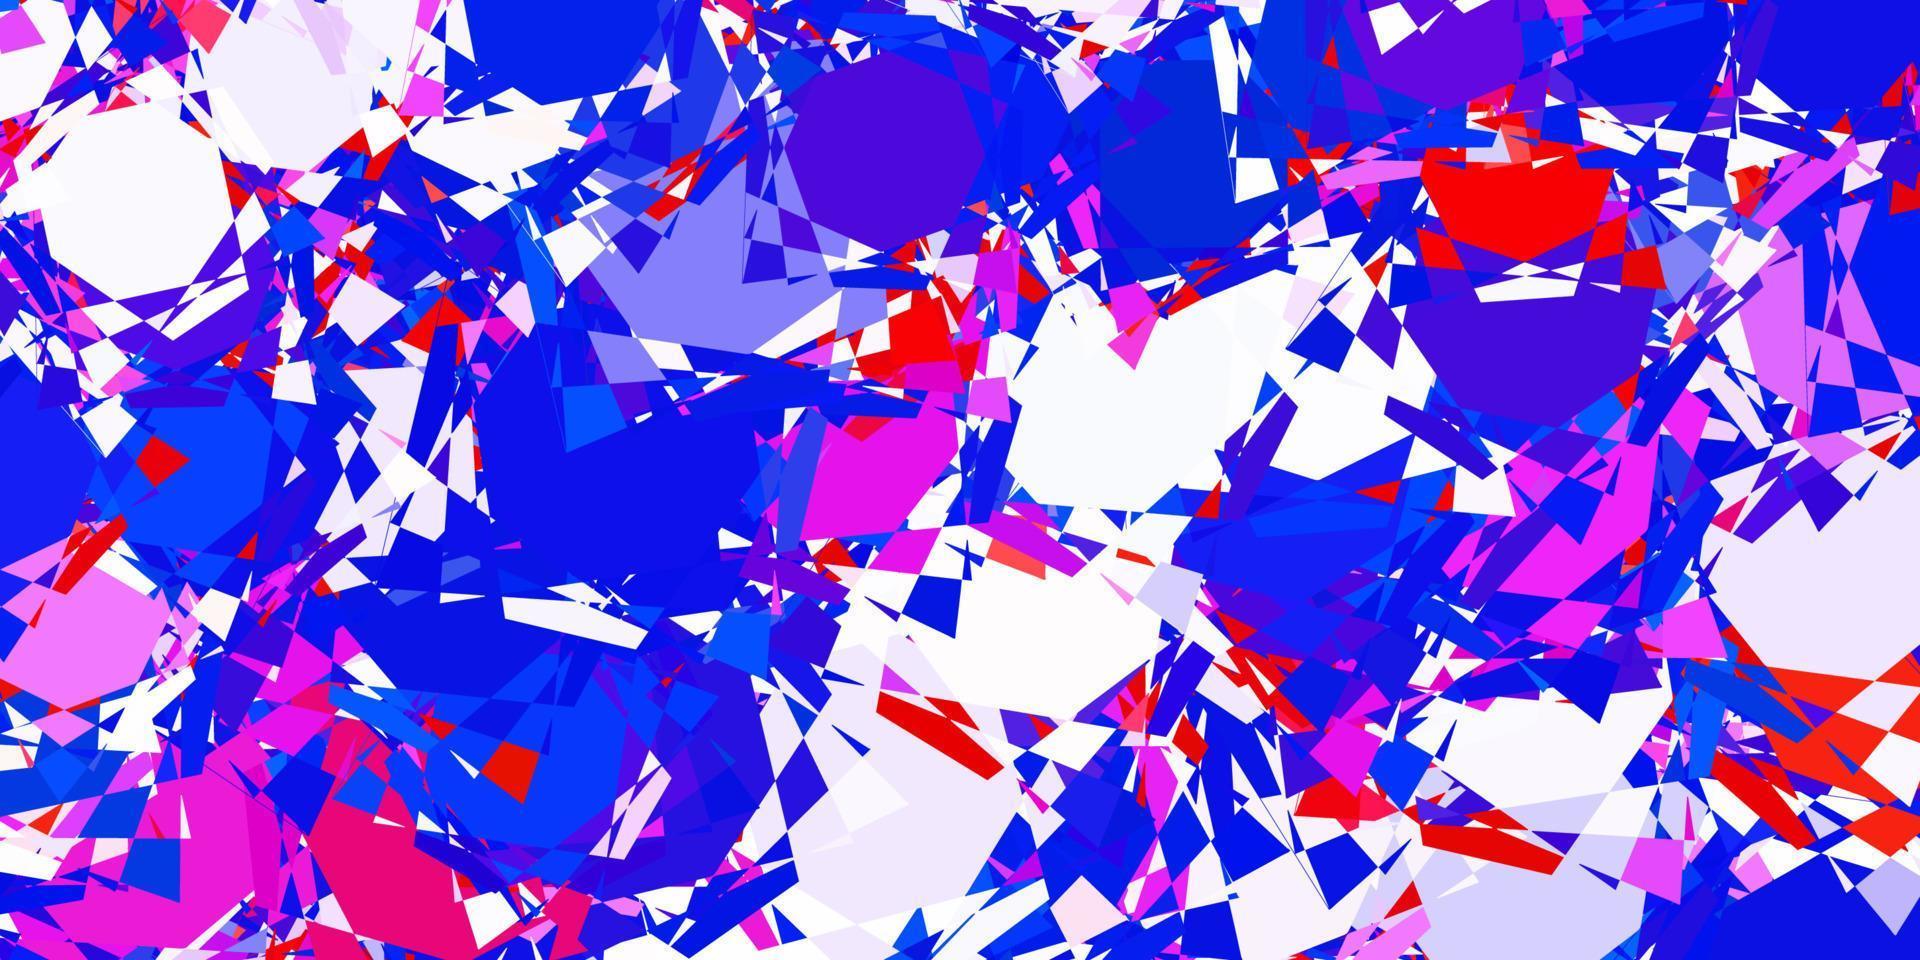 padrão de vetor azul e vermelho claro com formas poligonais.